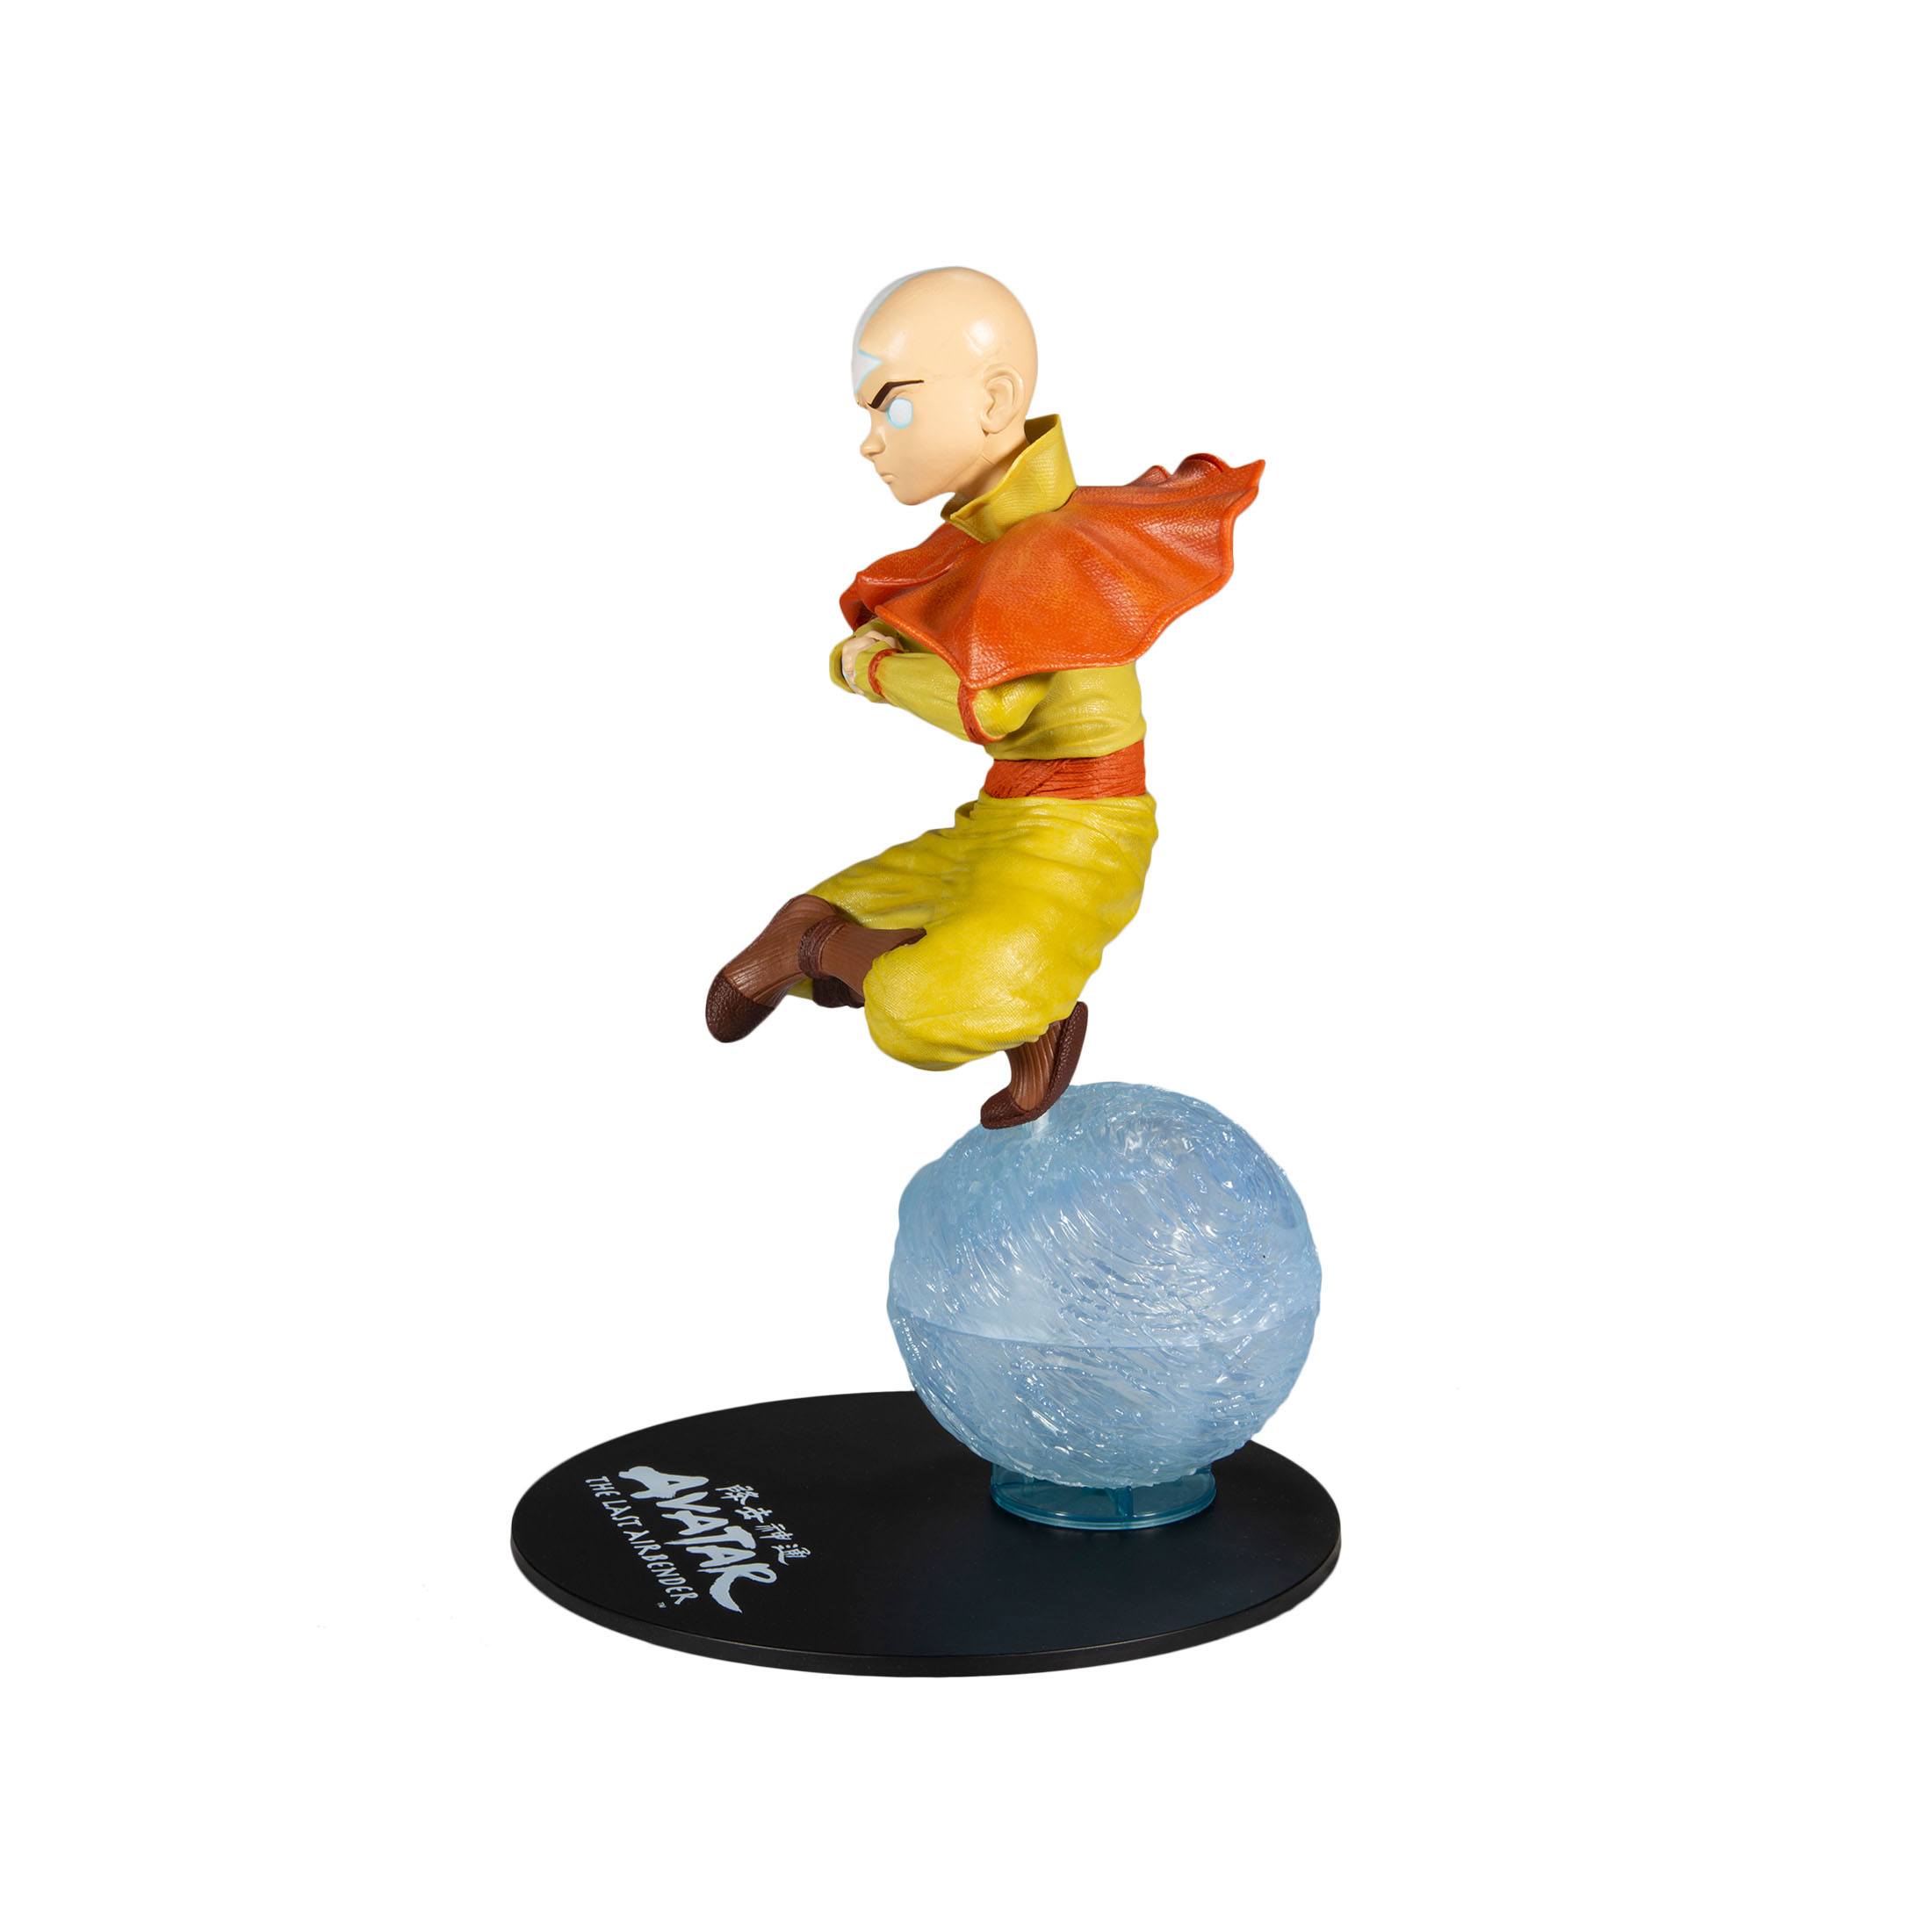 Avatar - Der Herr der Elemente Actionfigur Aang 30 cm